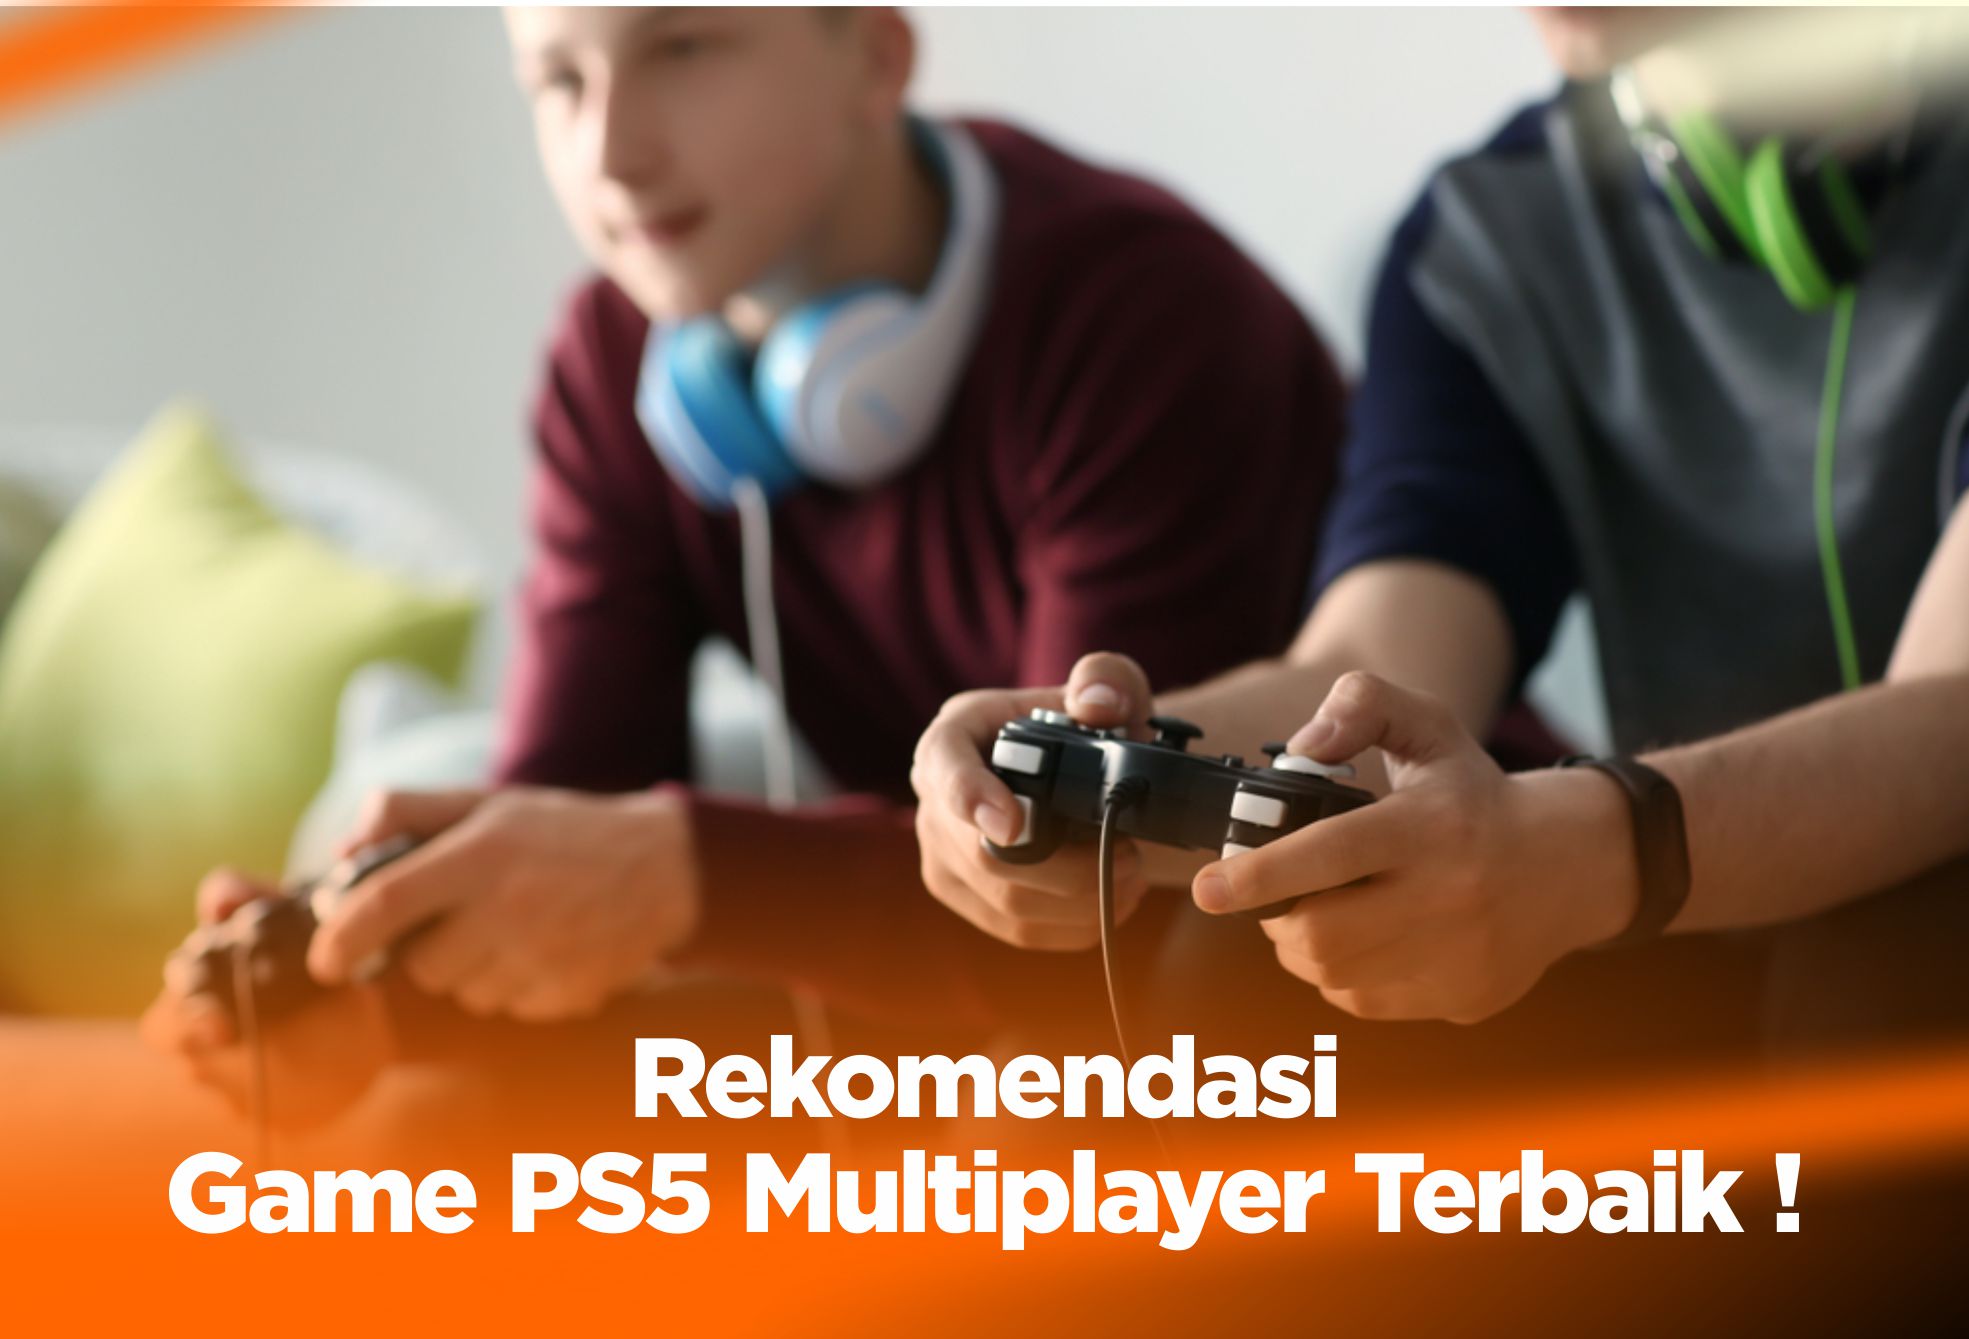 Rekomendasi Game PS5 Multiplayer